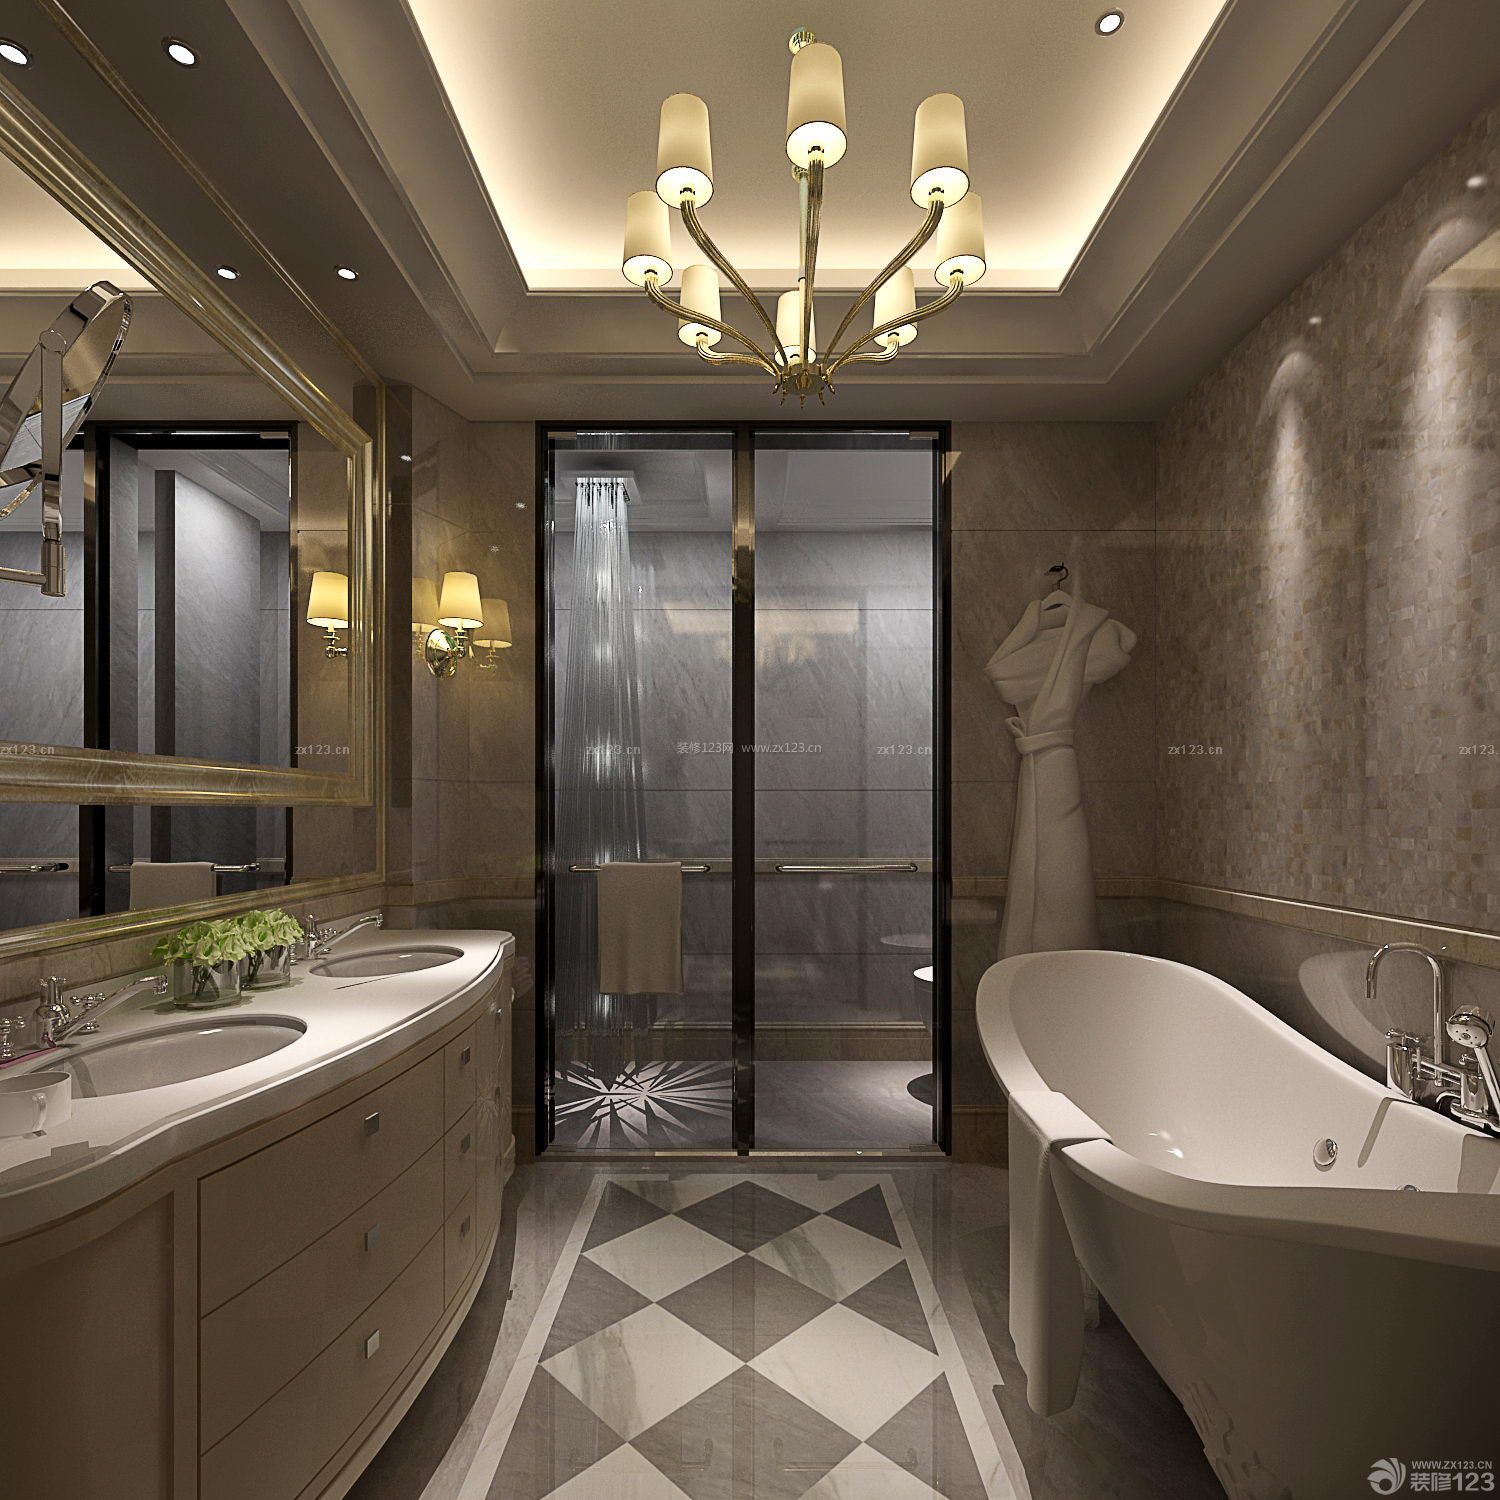 现代时尚家庭浴室隔断门设计效果图